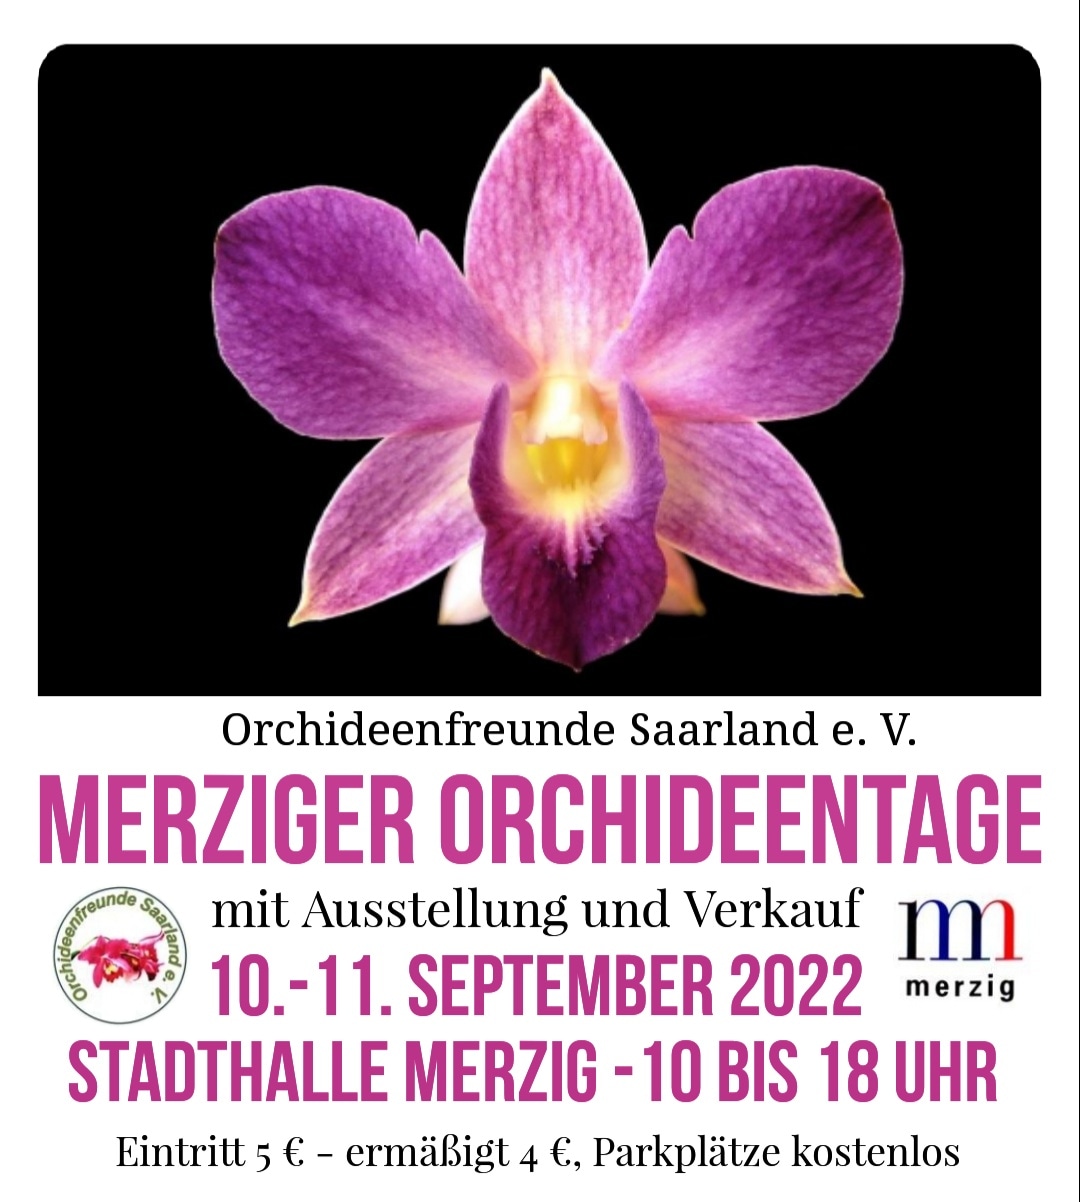 Orchideentage Merzig 10. bis 11. September 2022, Stadthalle Merzig